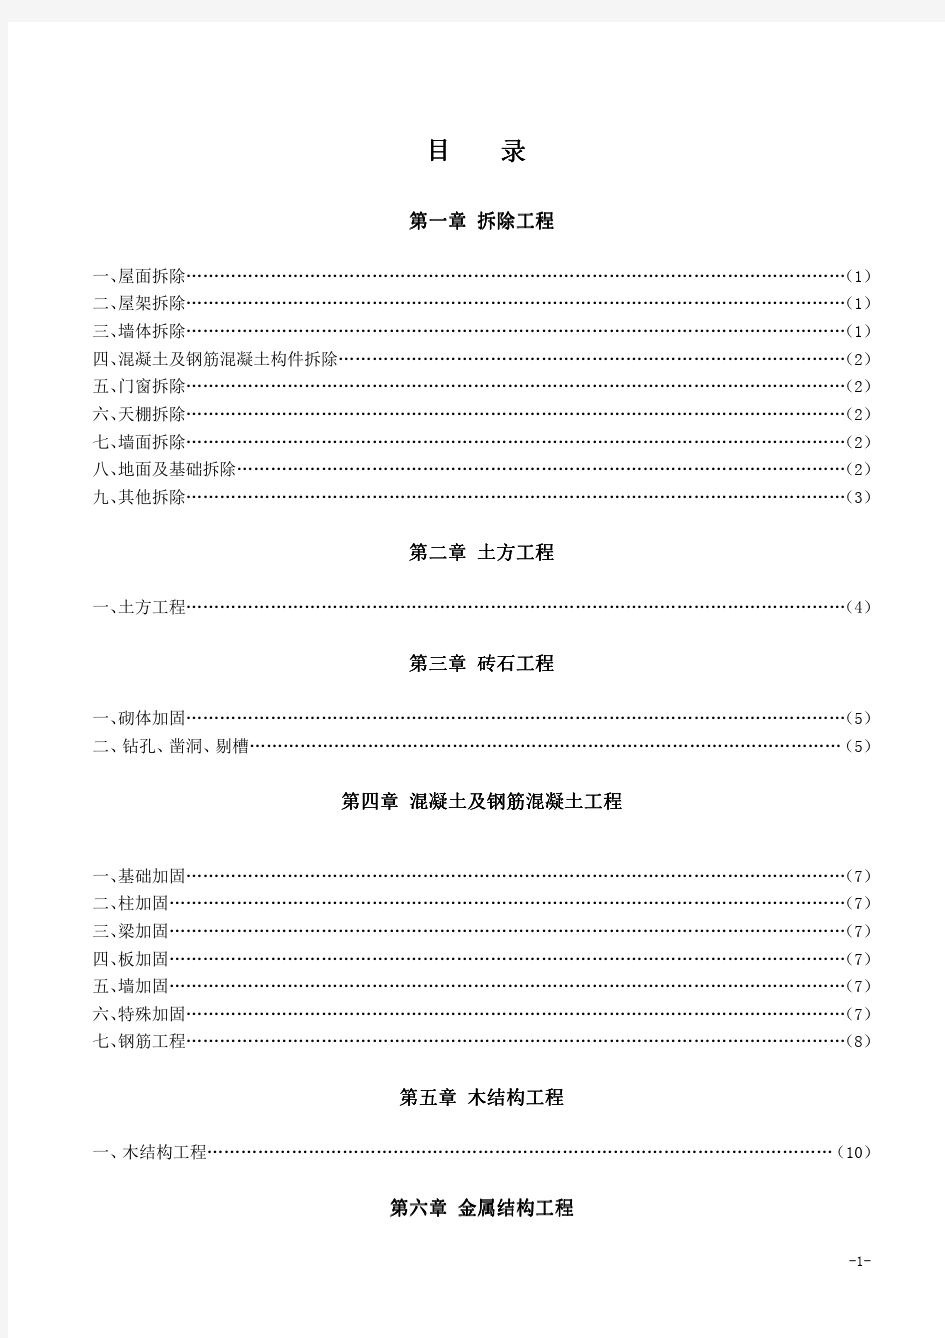 8、抗震加固工程预算定额价目汇总表(2011年山西定额).pdf